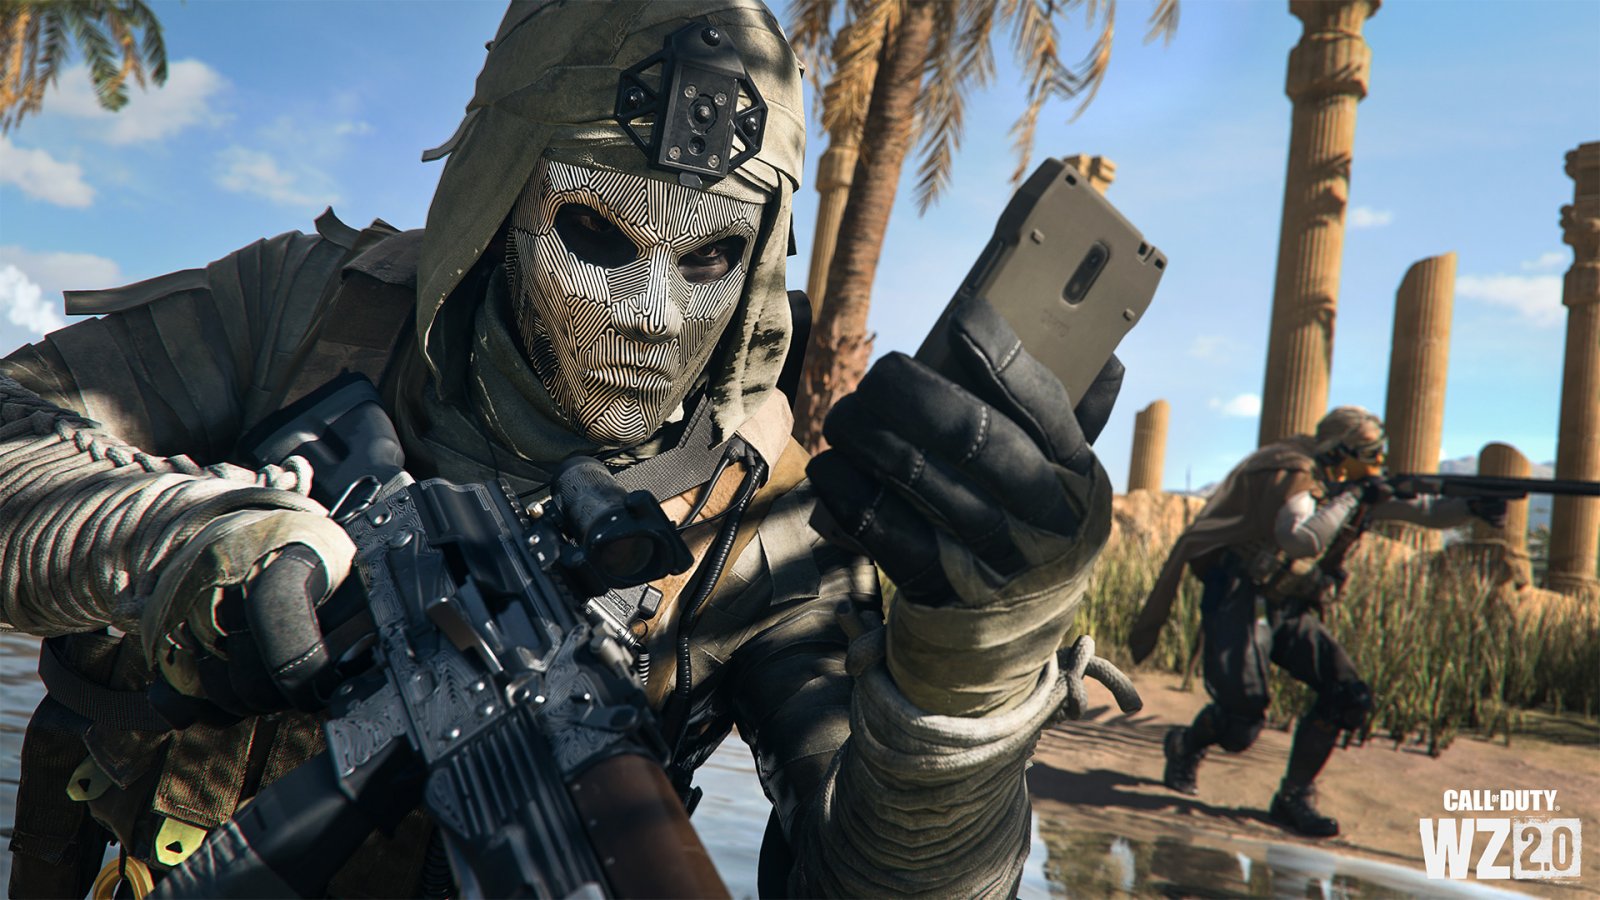 Call of Duty e Overwatch: campionati eSport a rischio per i pochi spettatori, ammette Activision